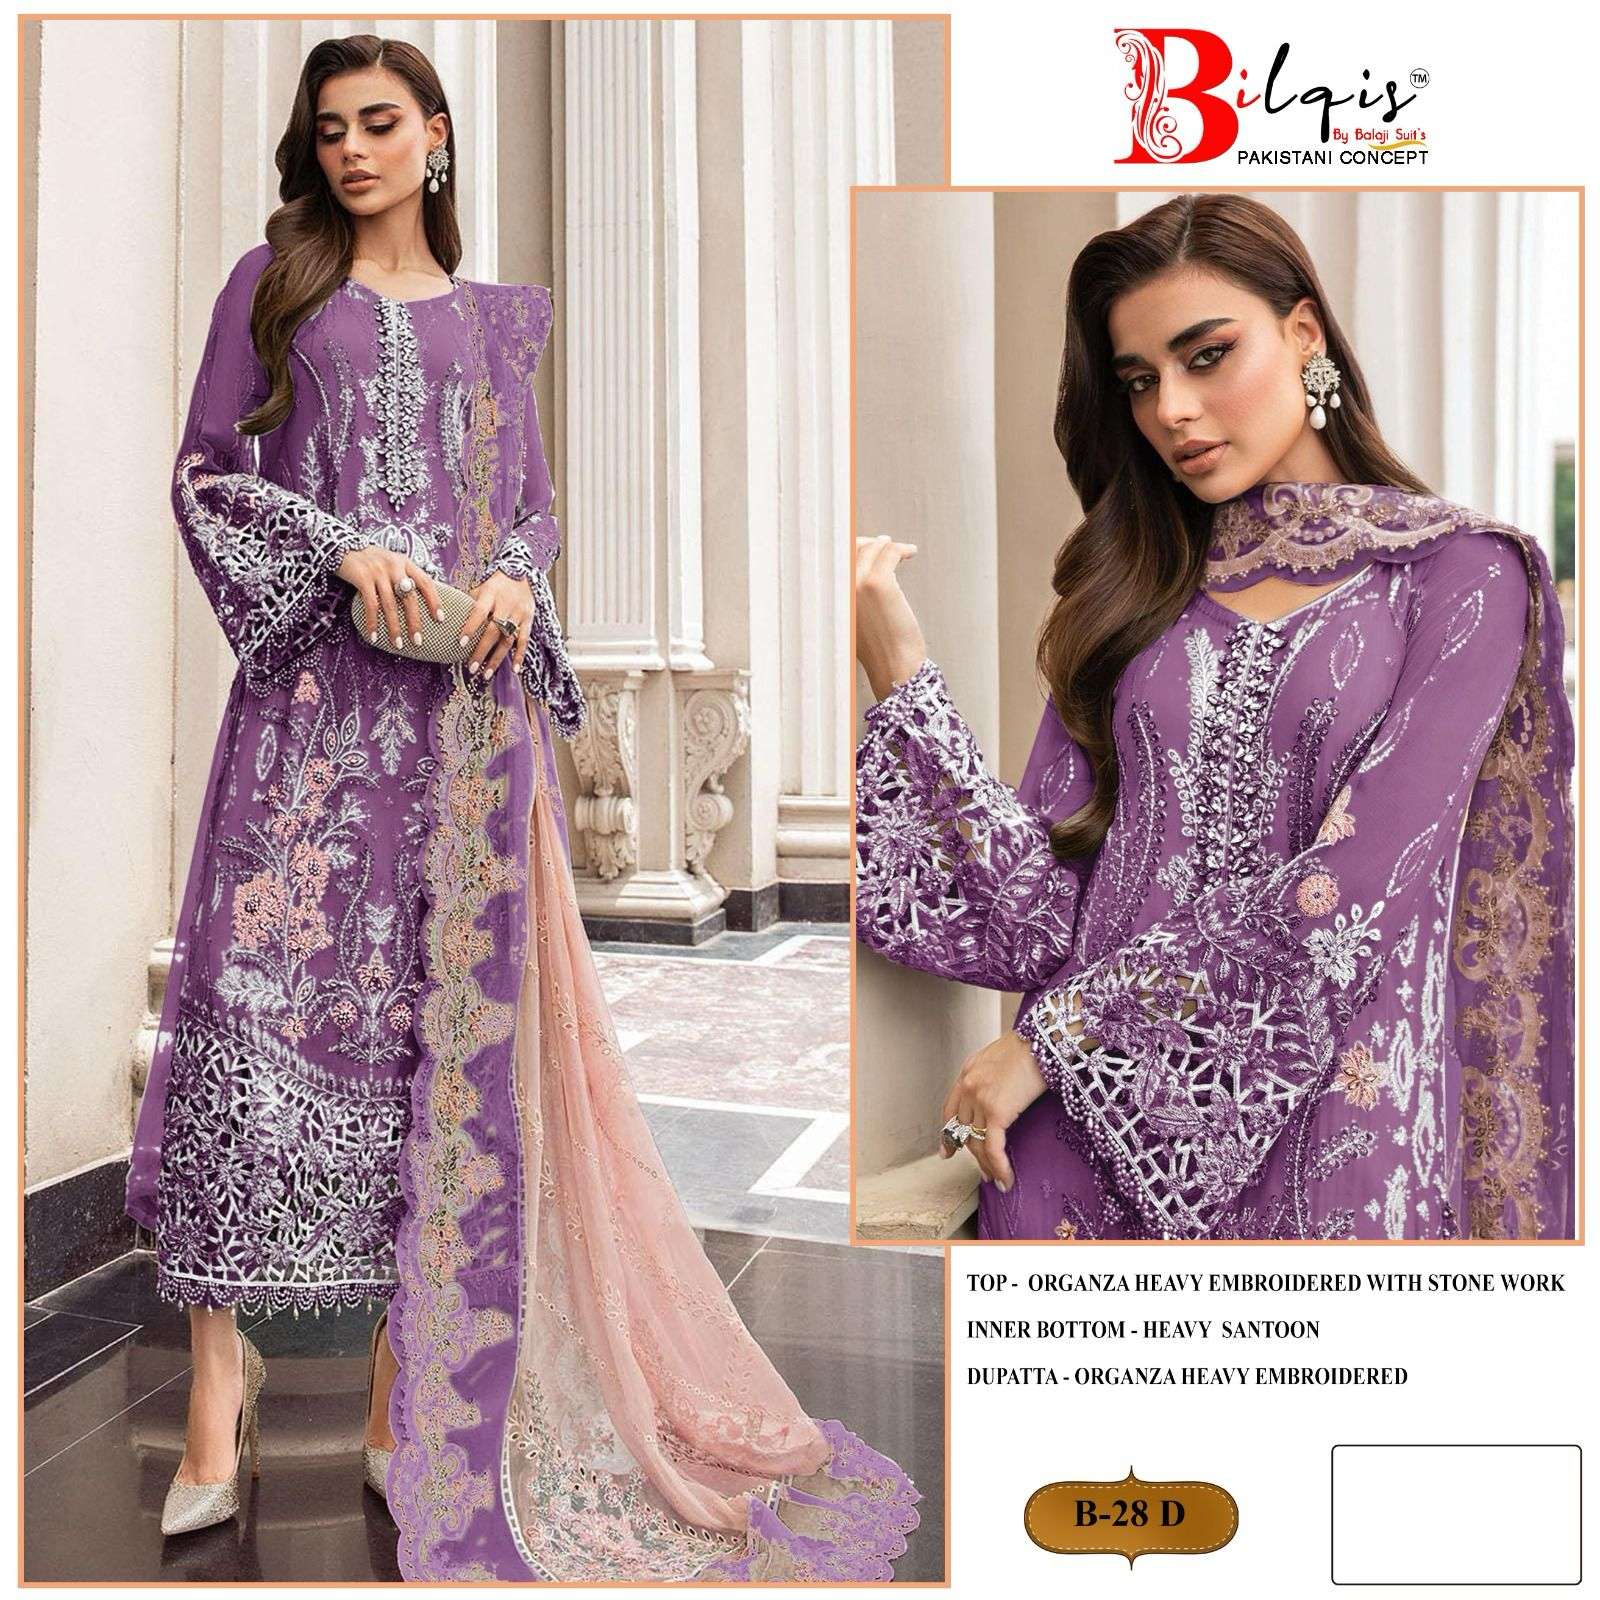 Bilqis B 28 A To D Organza Pakistani Suits Wholesale catalog